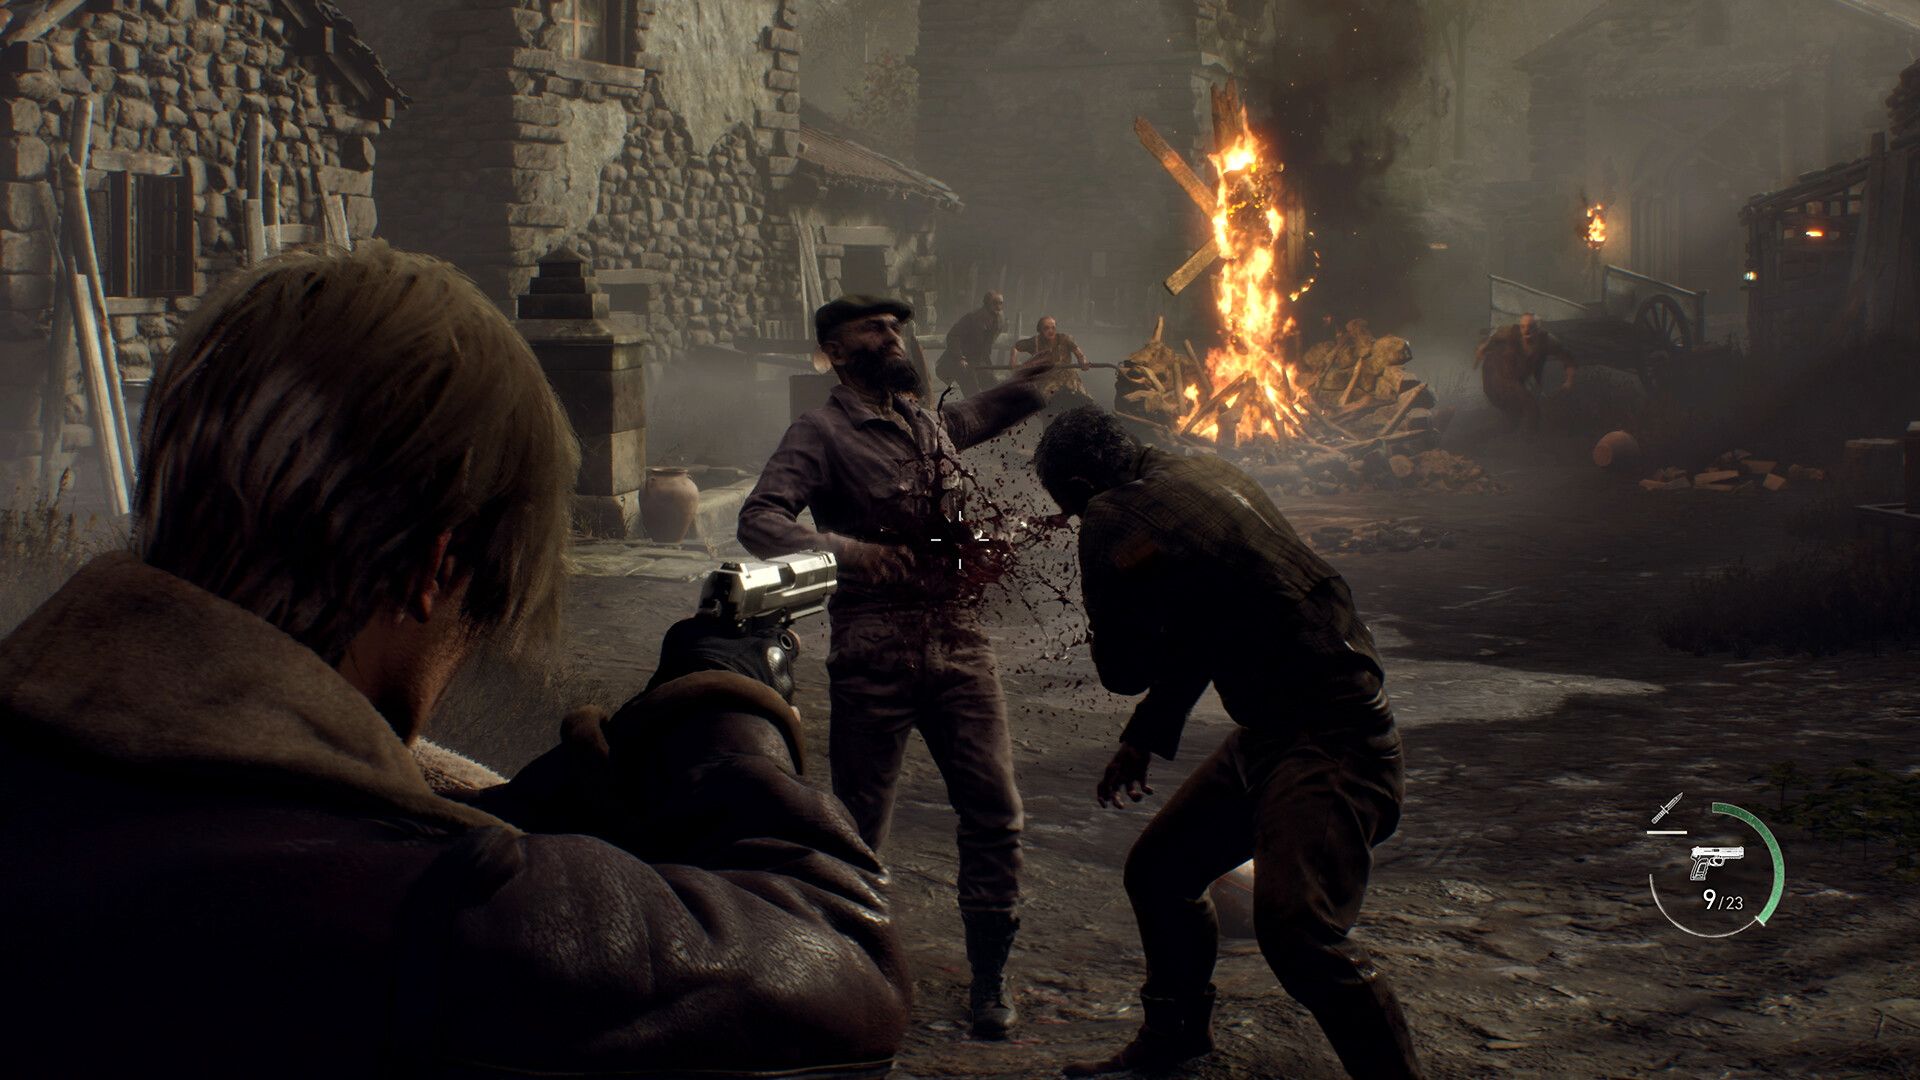 Resident Evil 4 - Juegos de PS4 y PS5